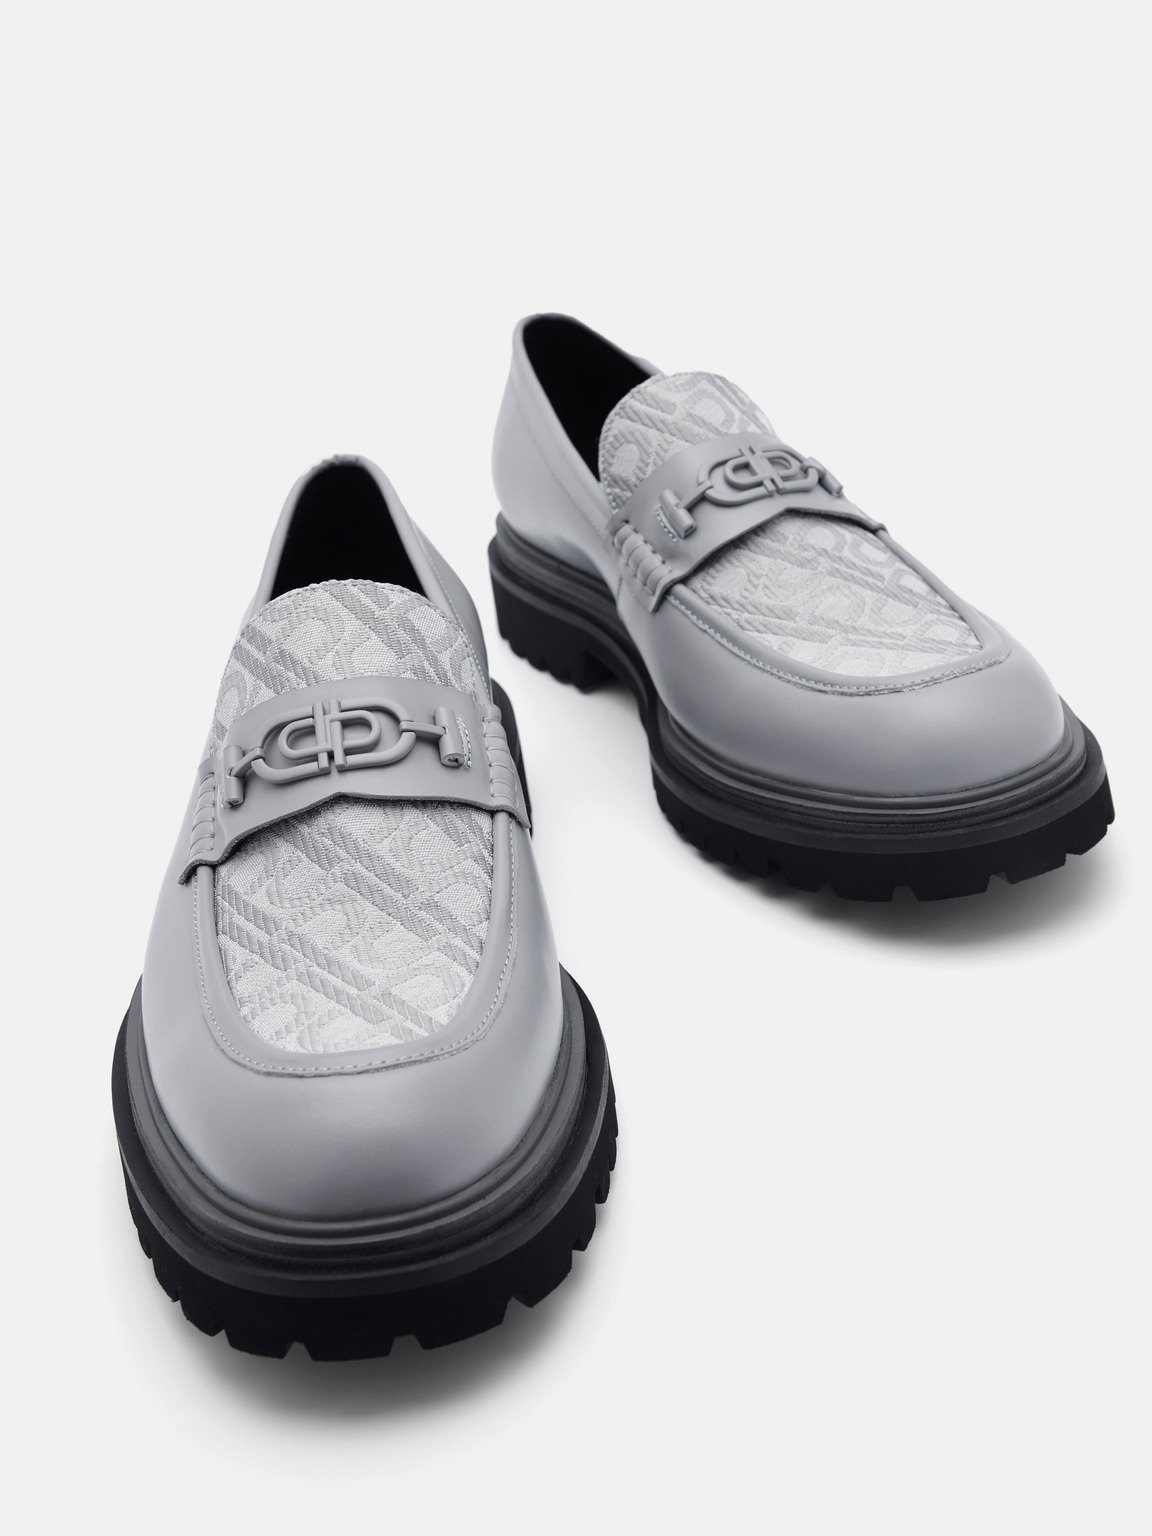 PEDRO標誌皮革樂福鞋, 灰色